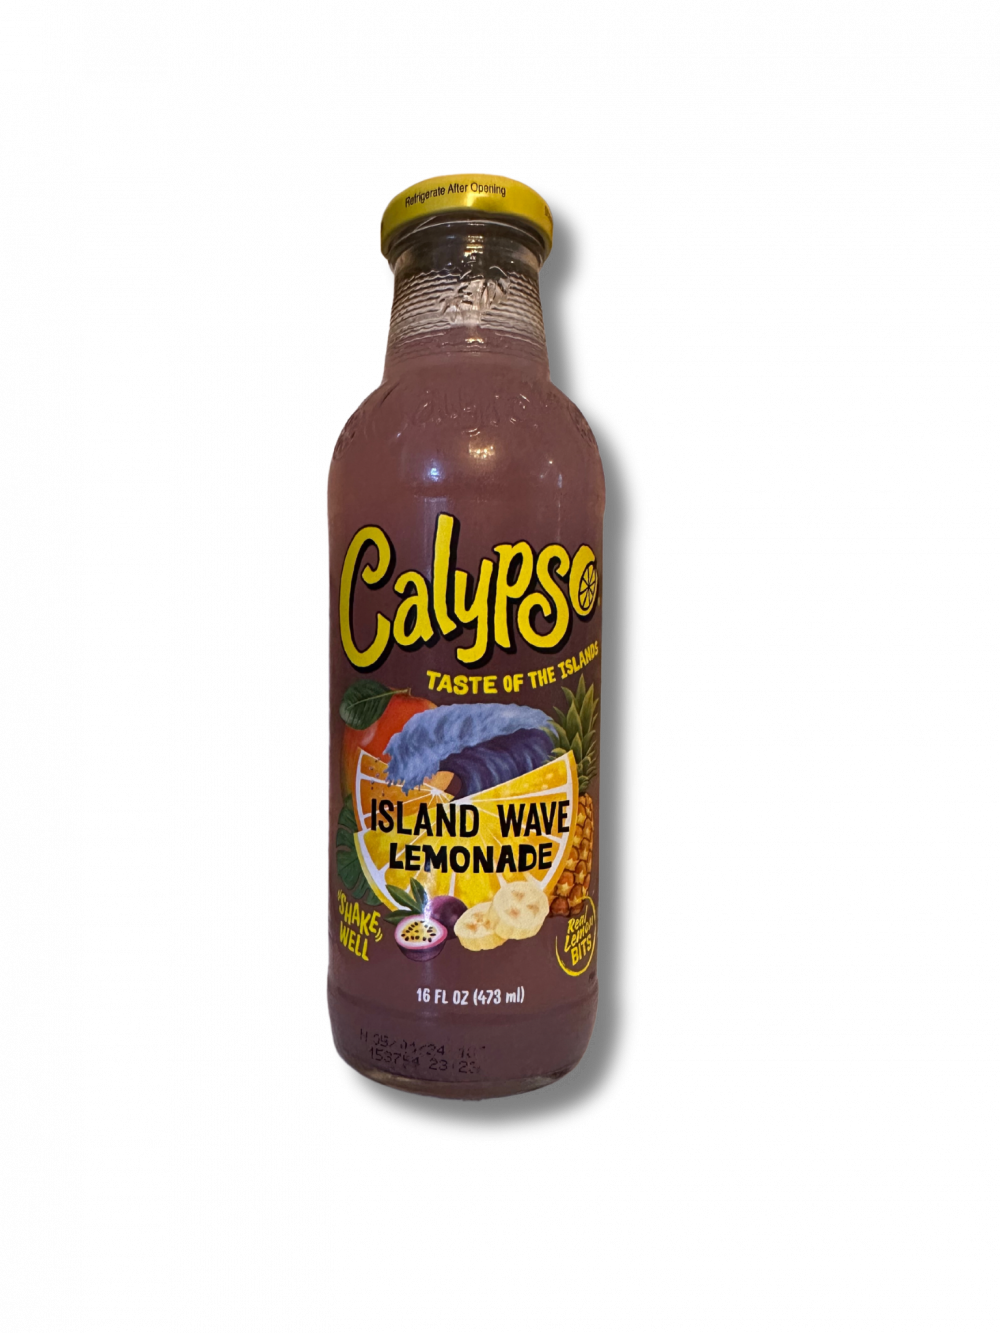 Mit der Calypso Island Wave Lemonade kannst du einen Hauch von Tropeninsel-Flair genießen. Diese Limonade kombiniert die klassische Zitrone mit einem exotischen Twist, der für Abwechslung sorgt und dich in Gedanken an paradiesische Strände und türkisblaues Wasser entführt. Jeder Schluck ist wie ein kleines Stück Urlaub. […] - Breddas Hemp & Sweets Company Wuppertal